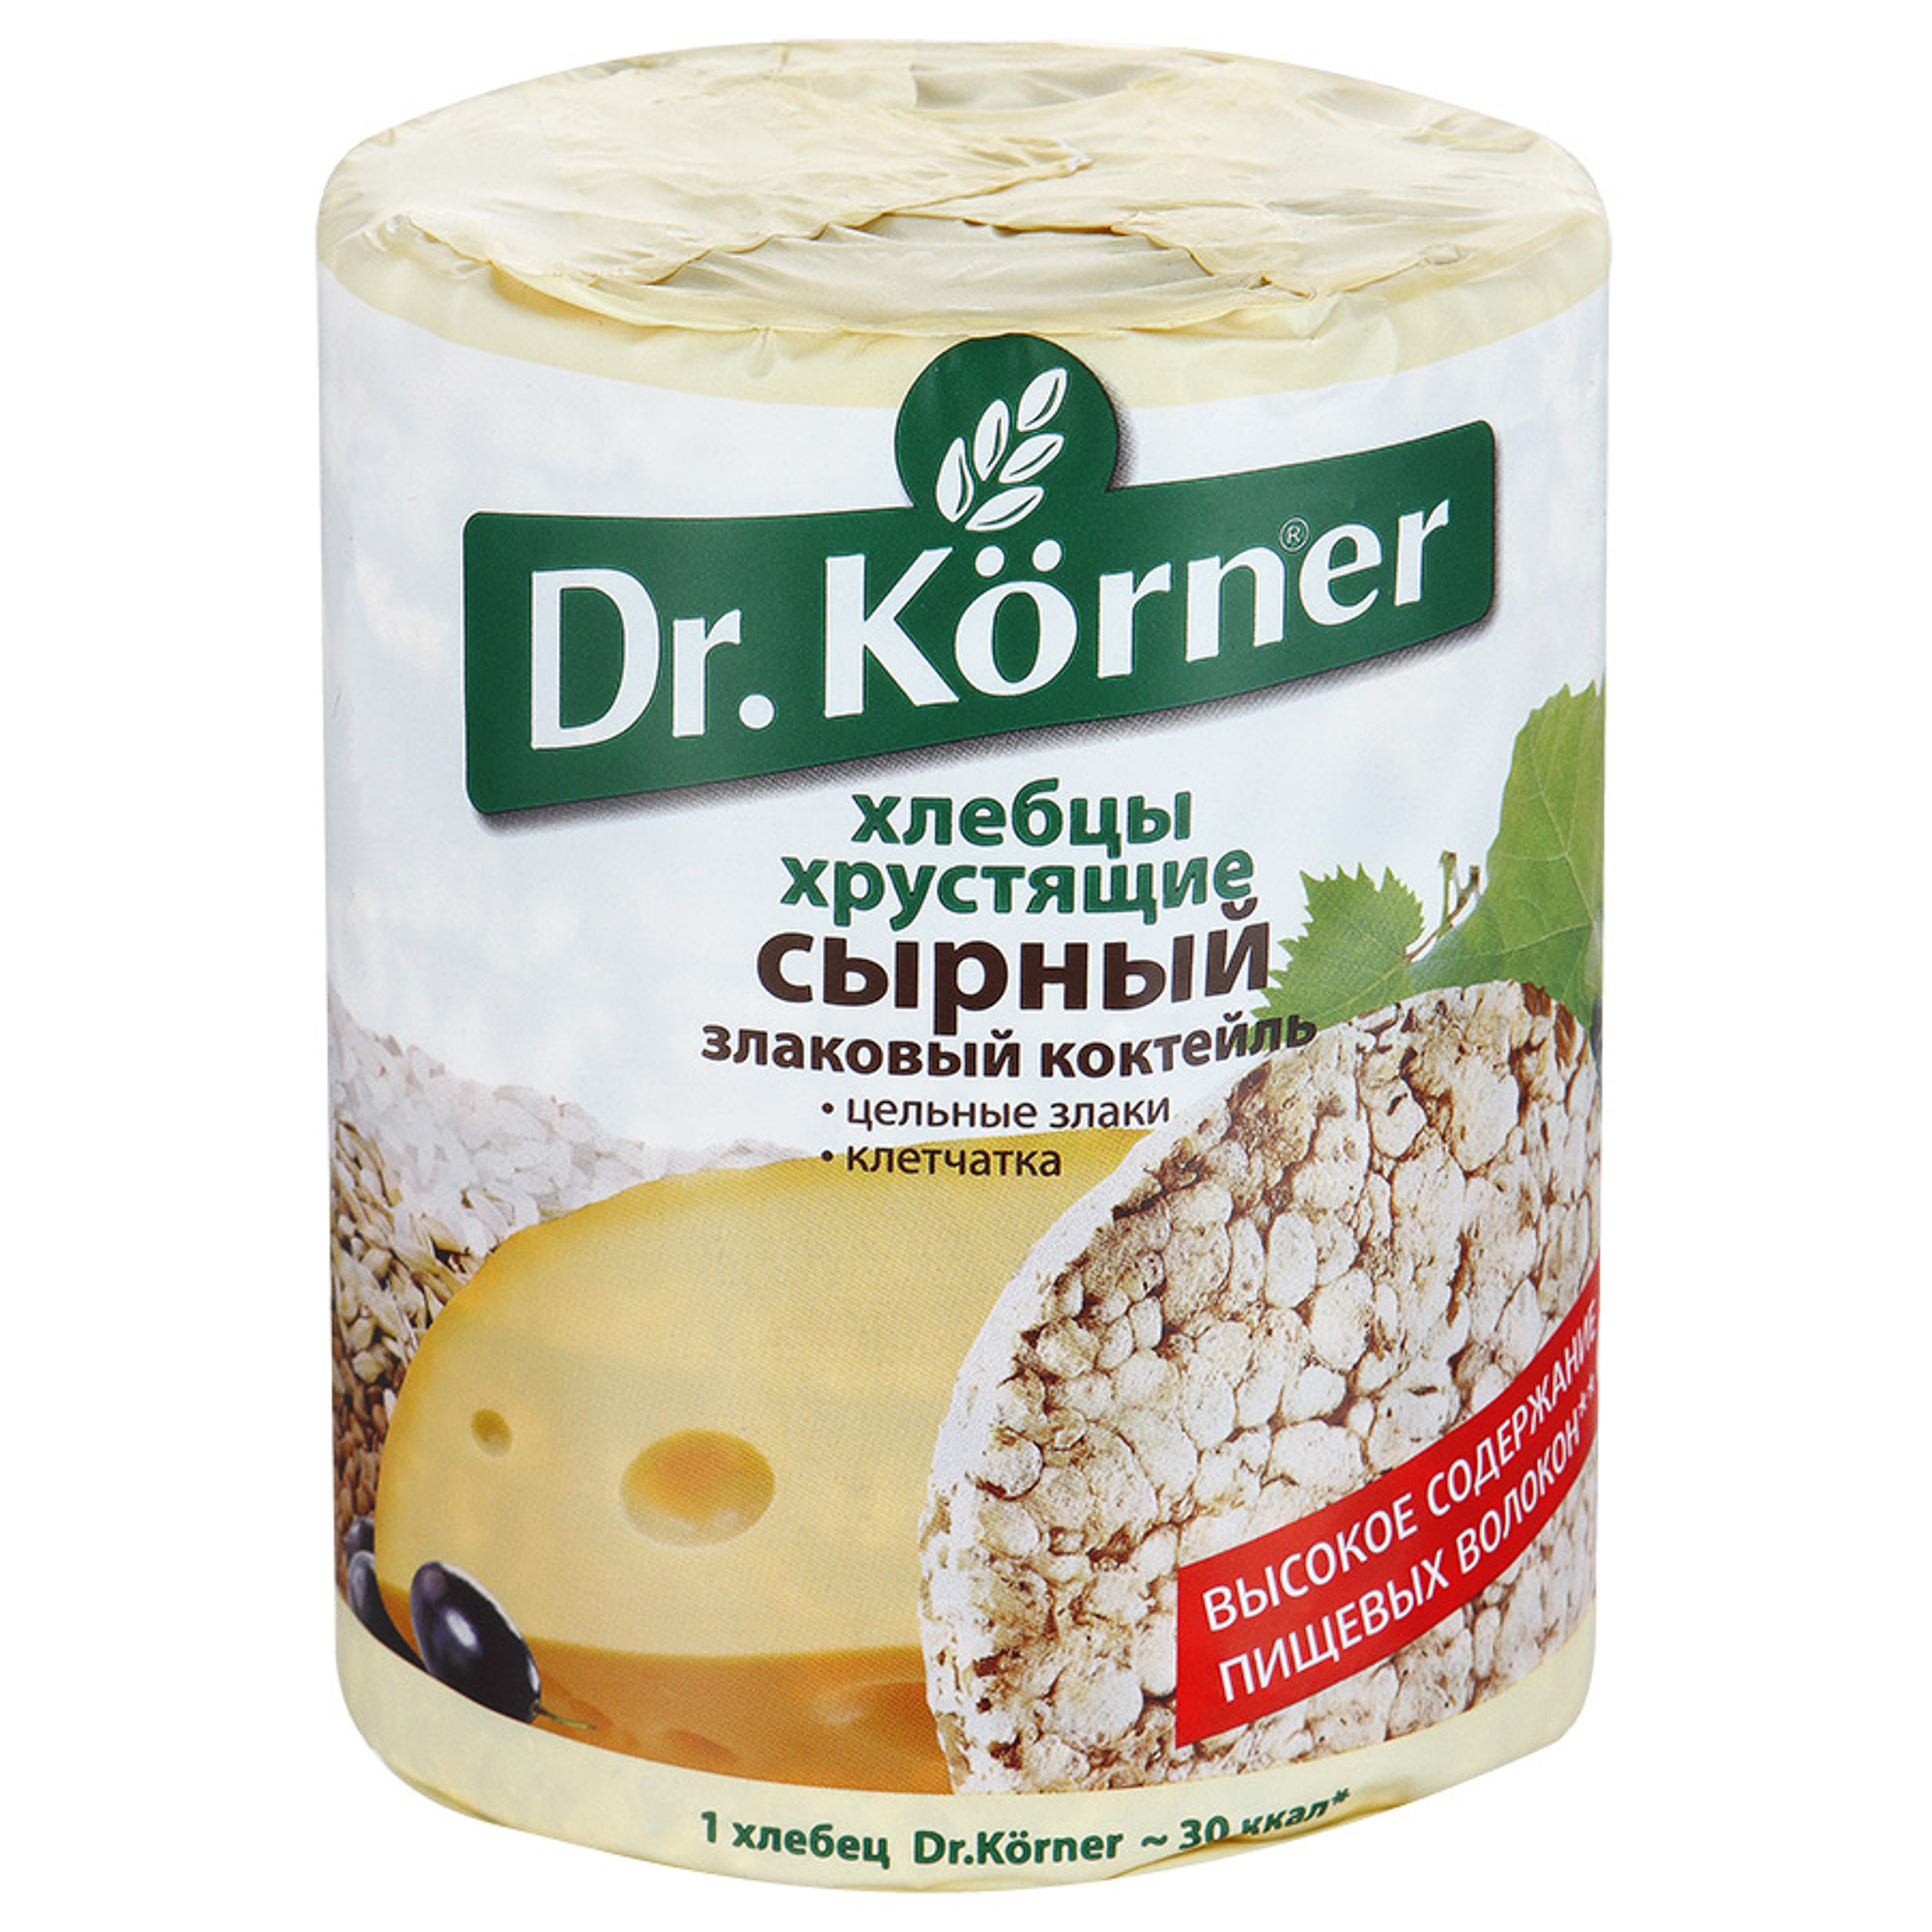 Хлебцы хрустящие Dr. Korner Злаковый коктейль сырный 100 г хлебцы dr korner хрустящие гречневые с витаминами 100 г